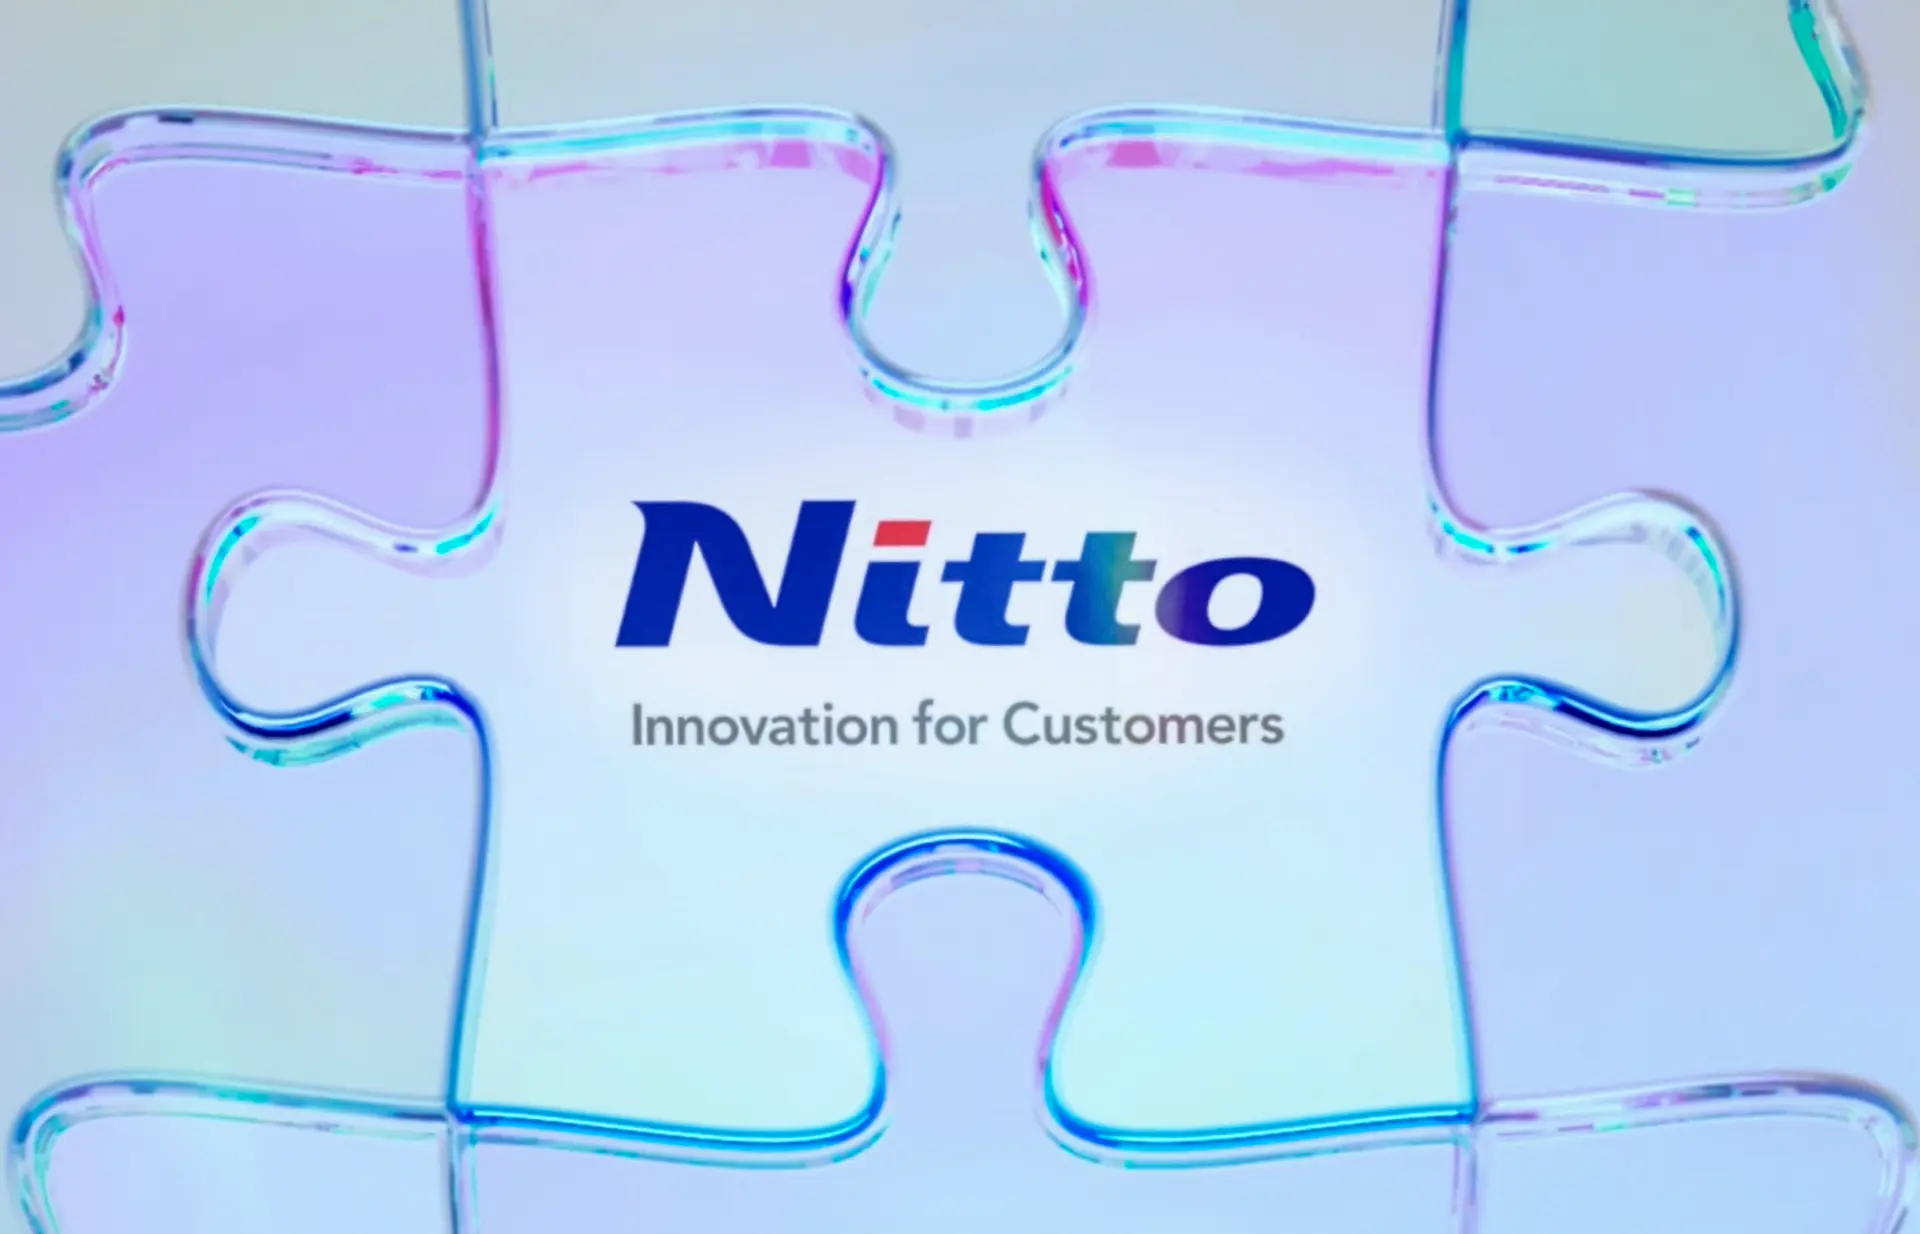 中期経営計画「Nitto for Everyone 2025」